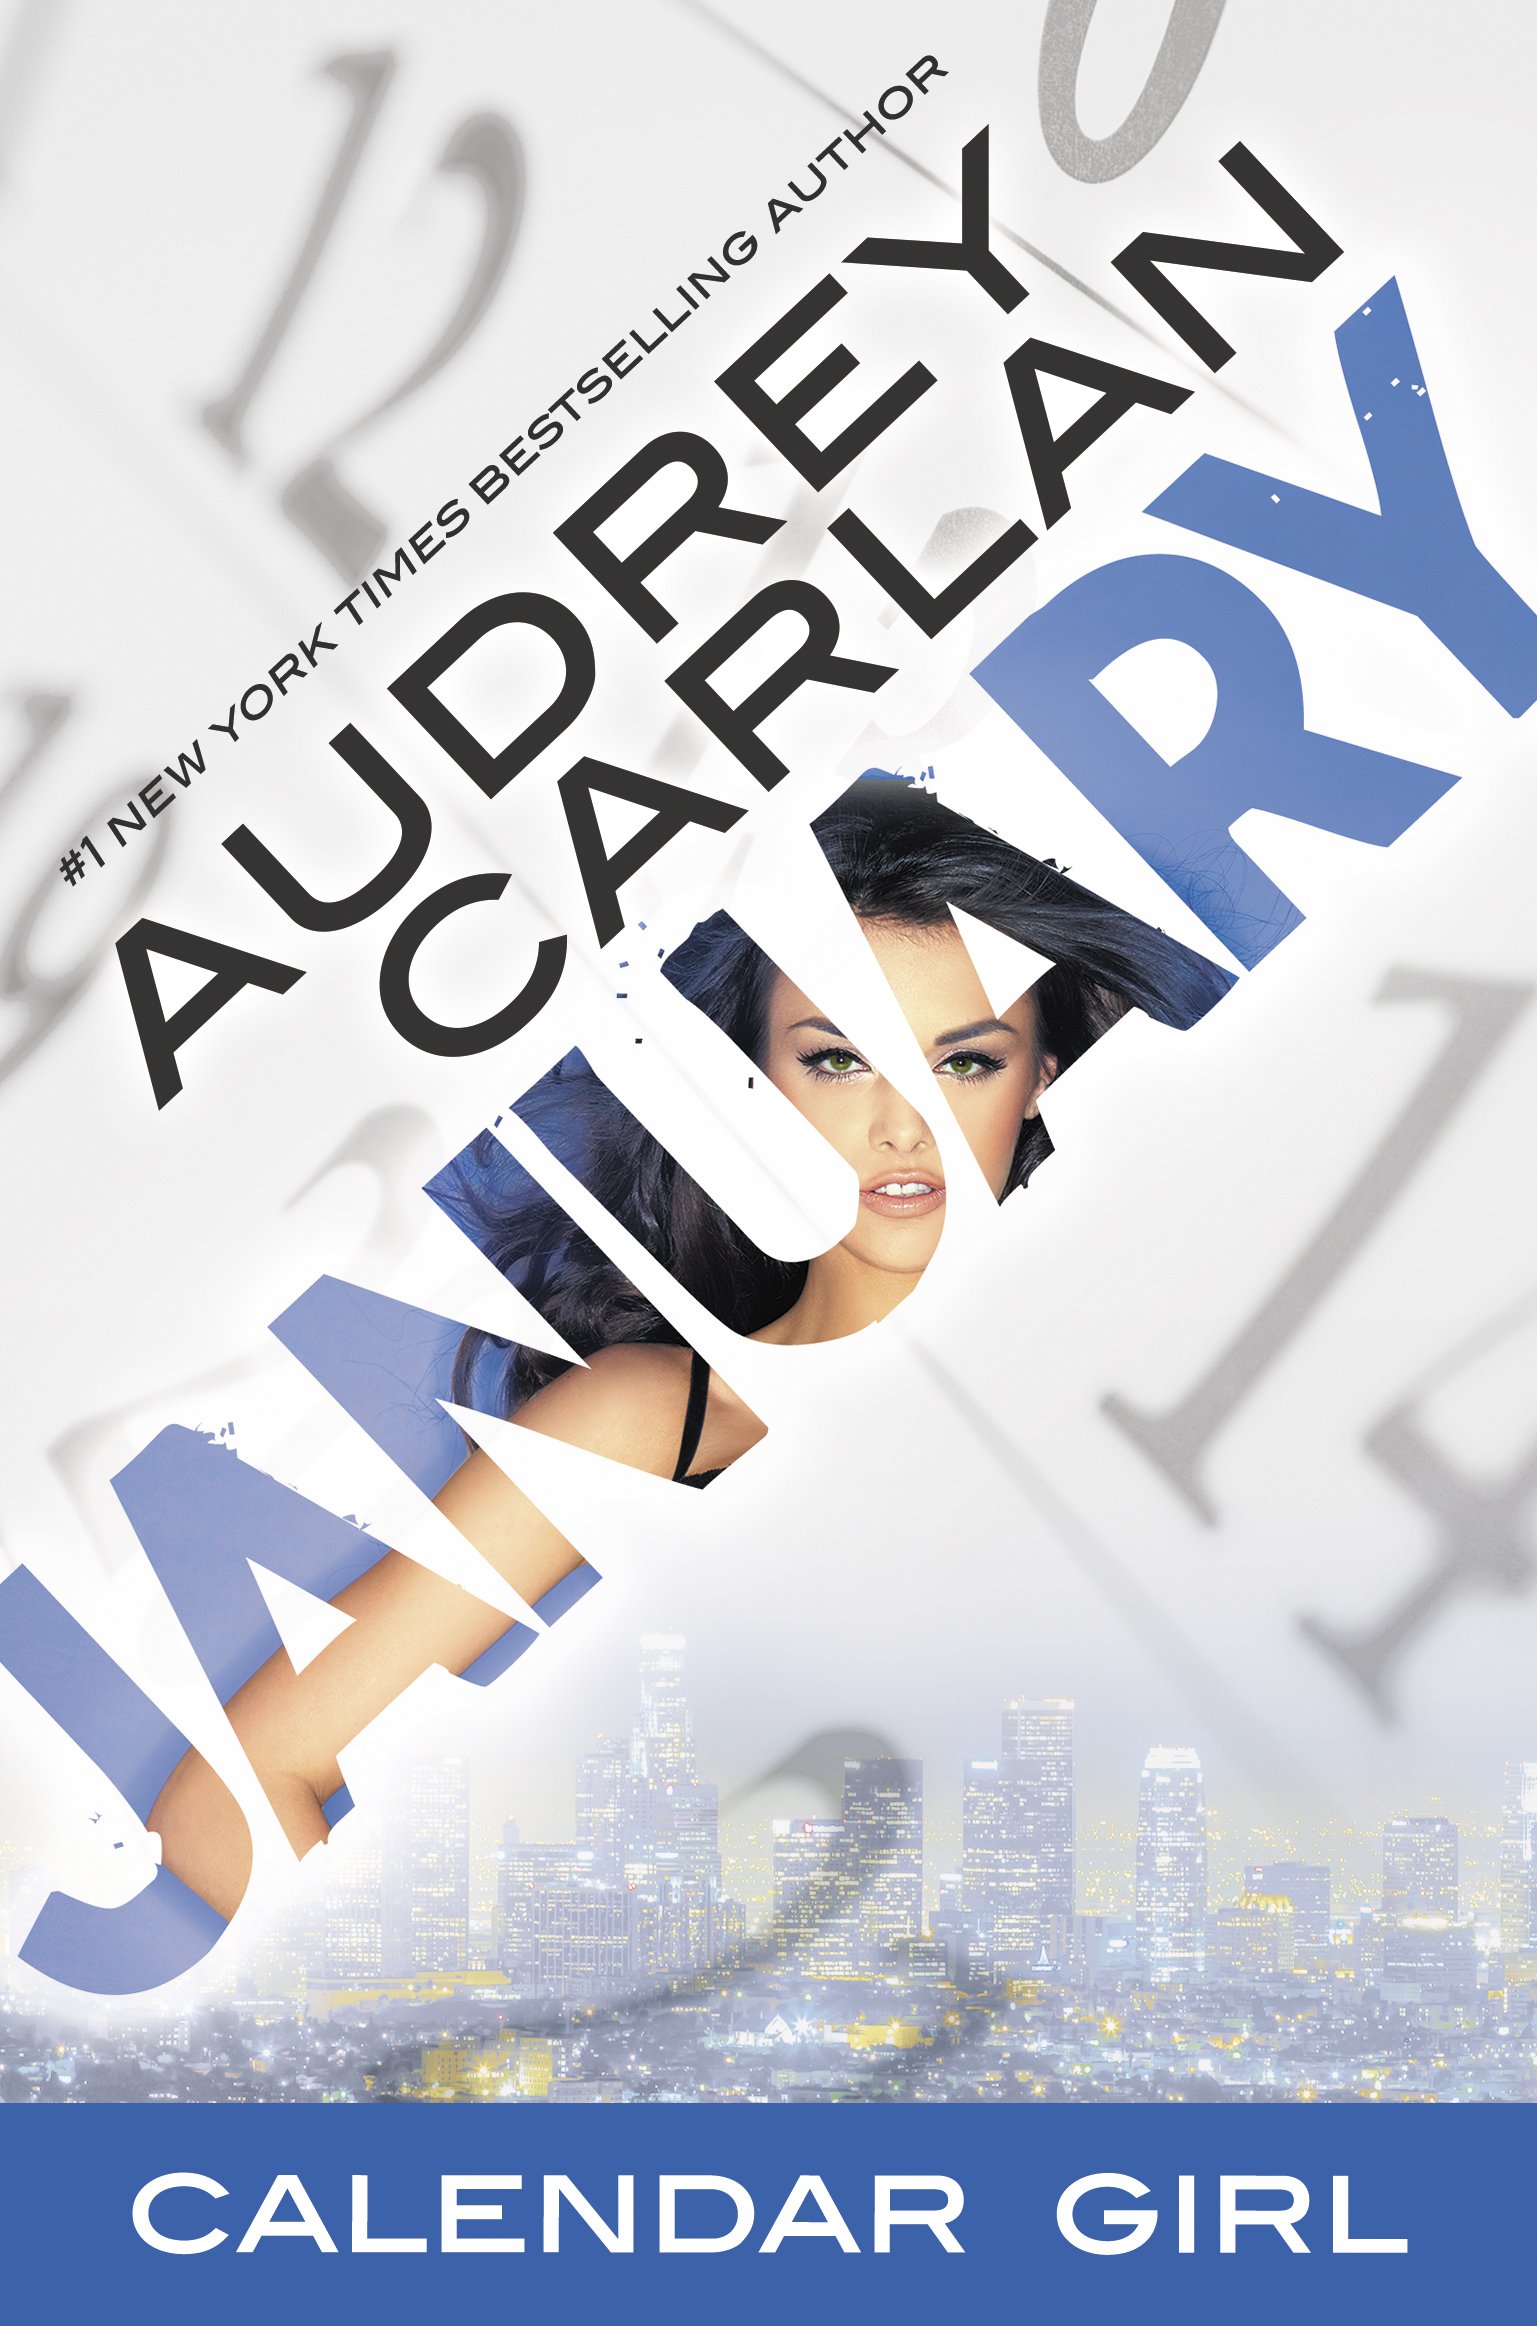 Audrey Carlan January